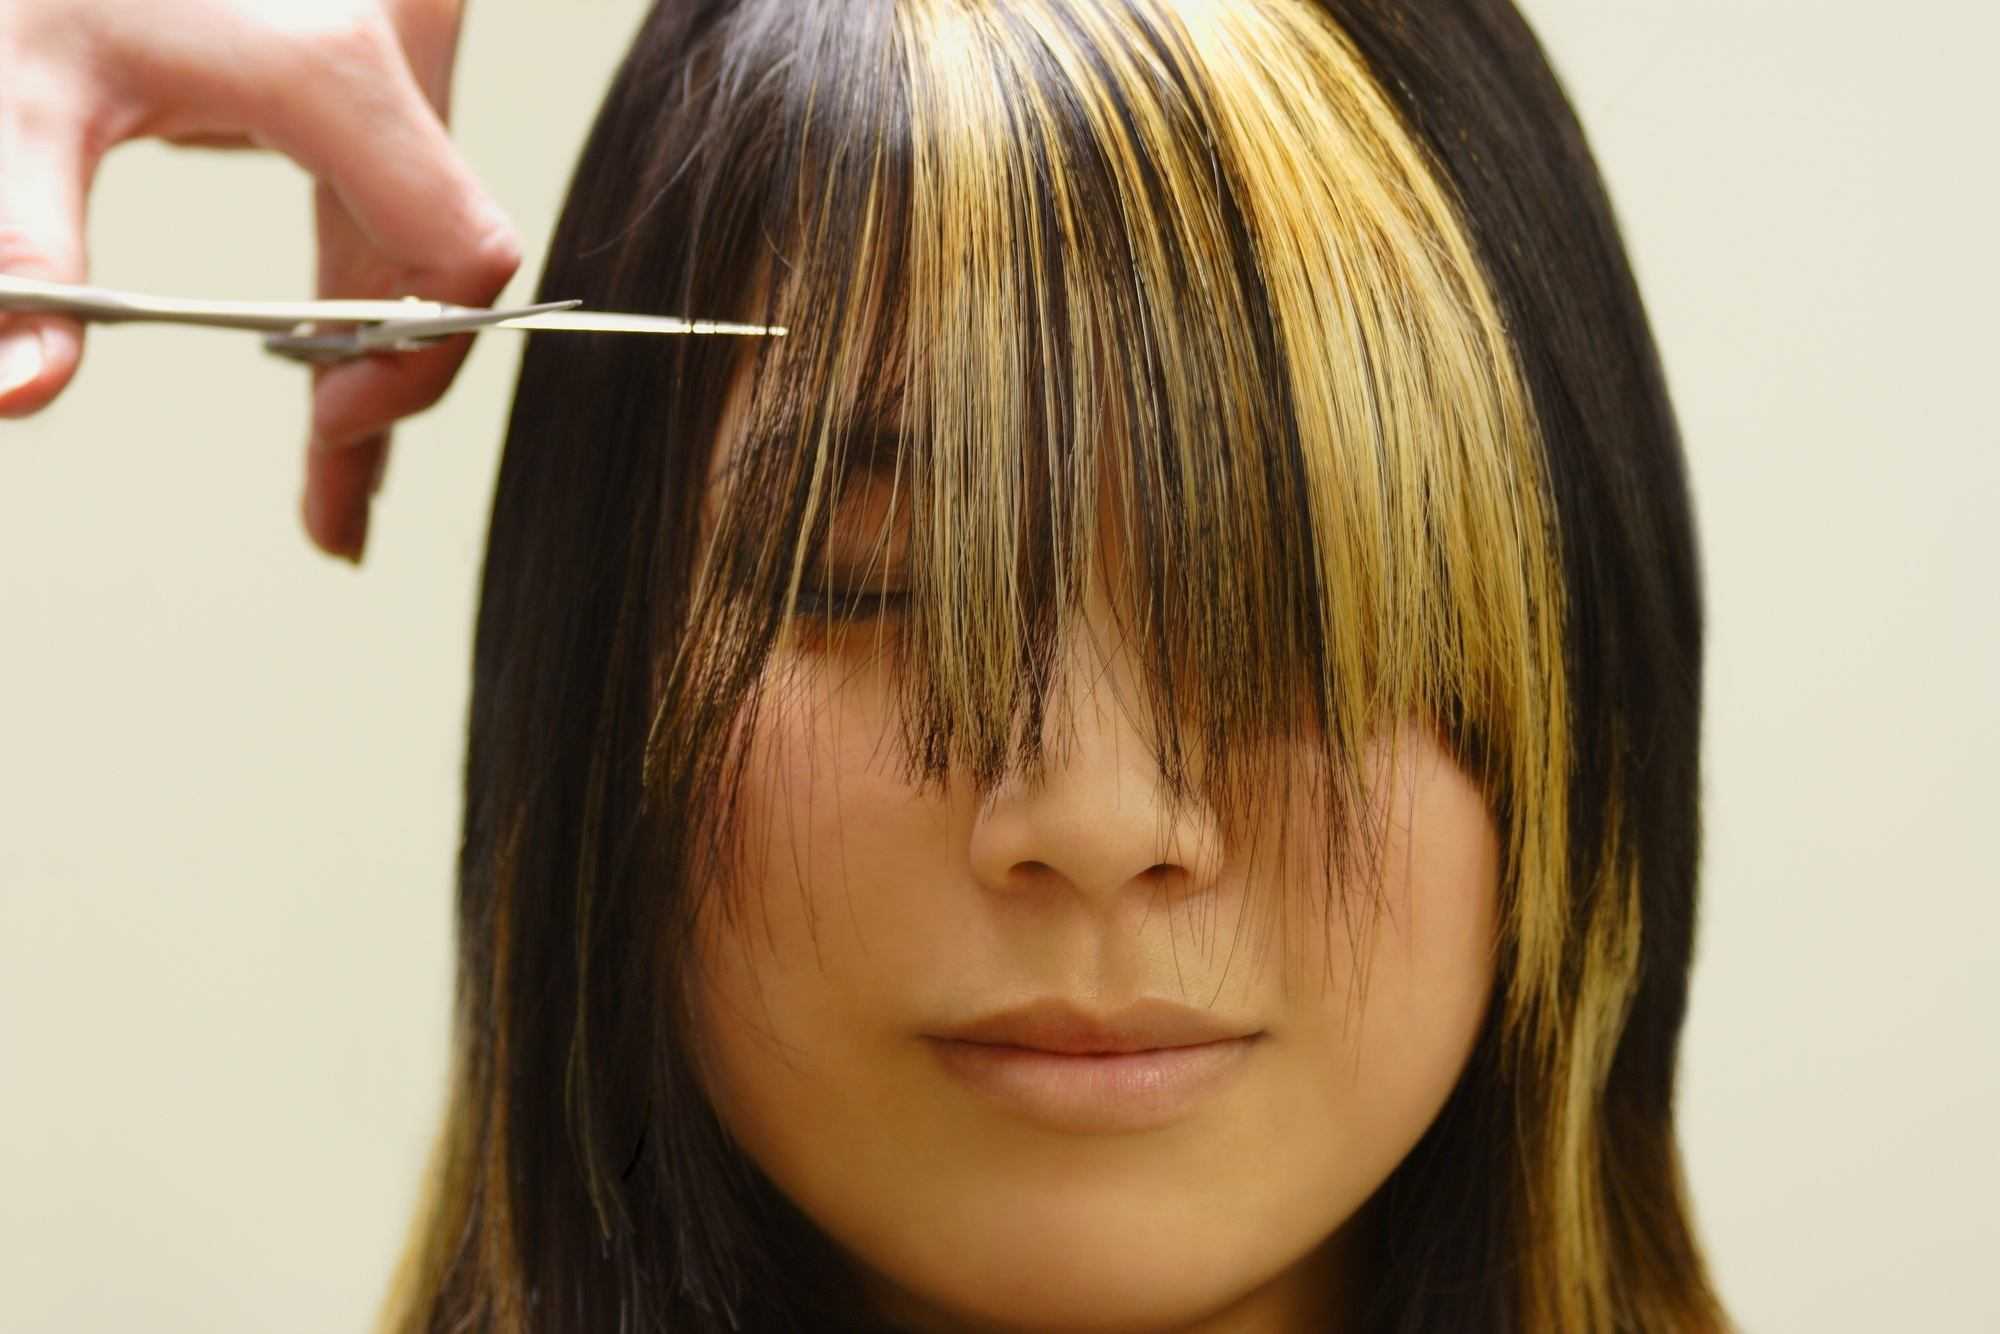 Как сделать себе челку. техника стрижки: на мокрые или сухие волосы? как подстричь прямую челку